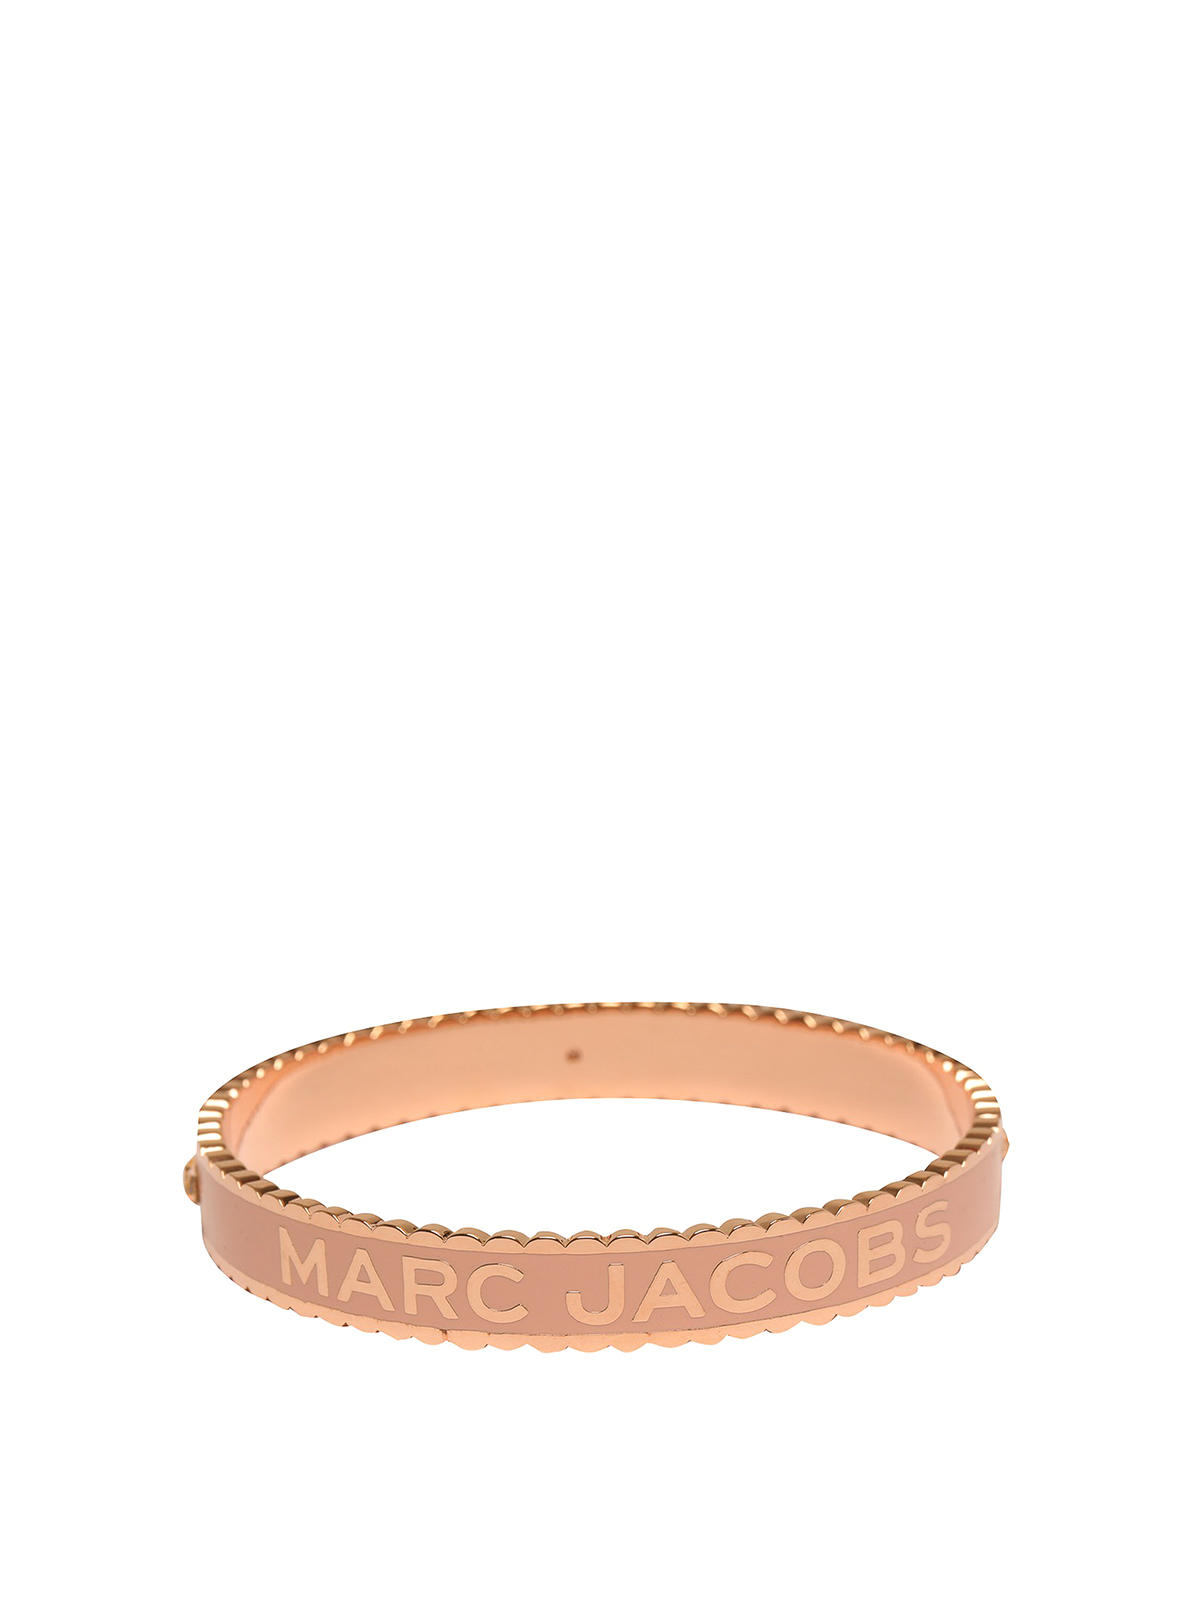 Bracelets | Marc Jacobs | Official Site